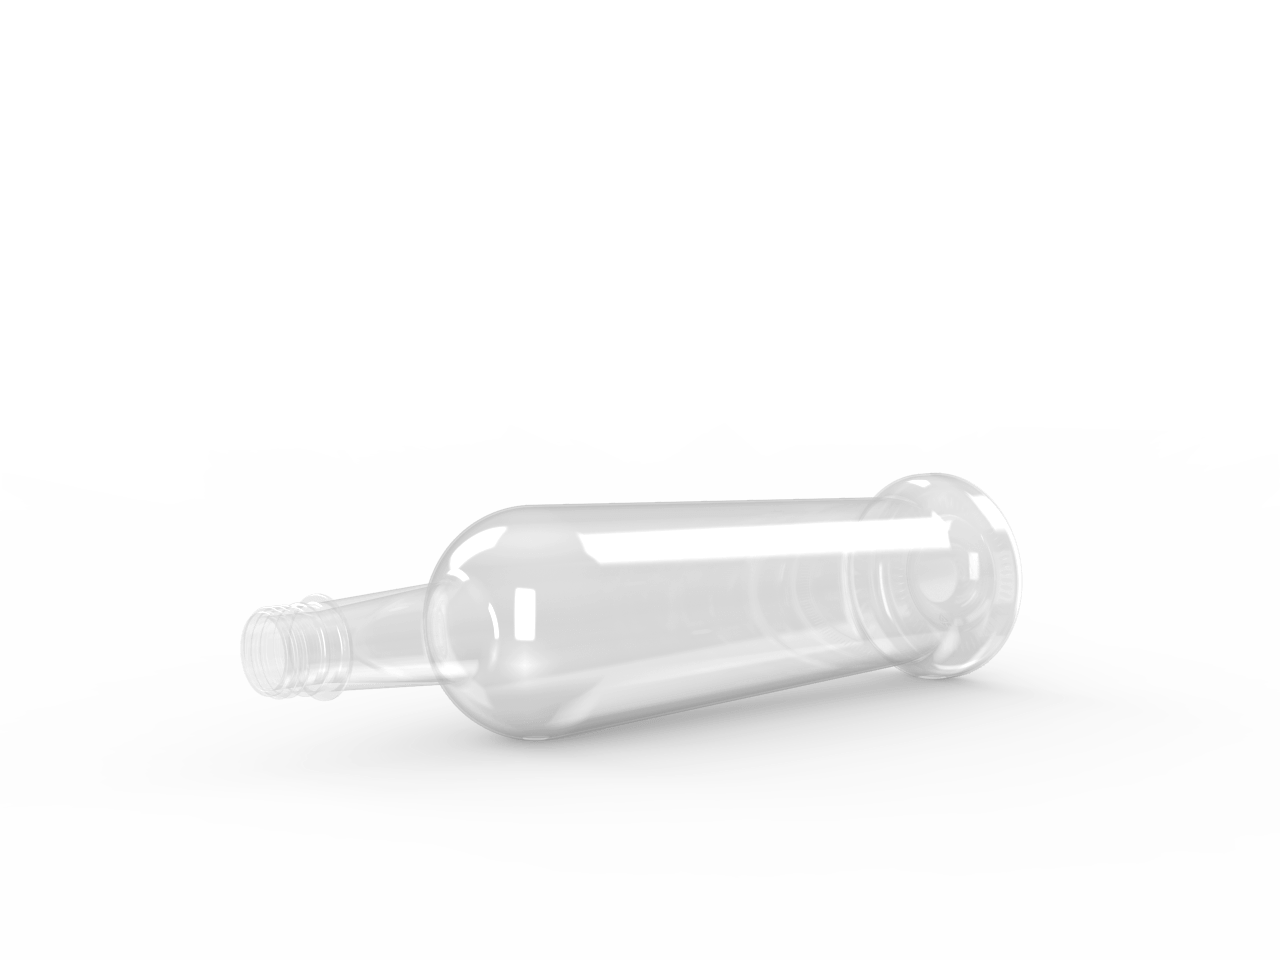 Clear PET plastic bottle lying on its side.